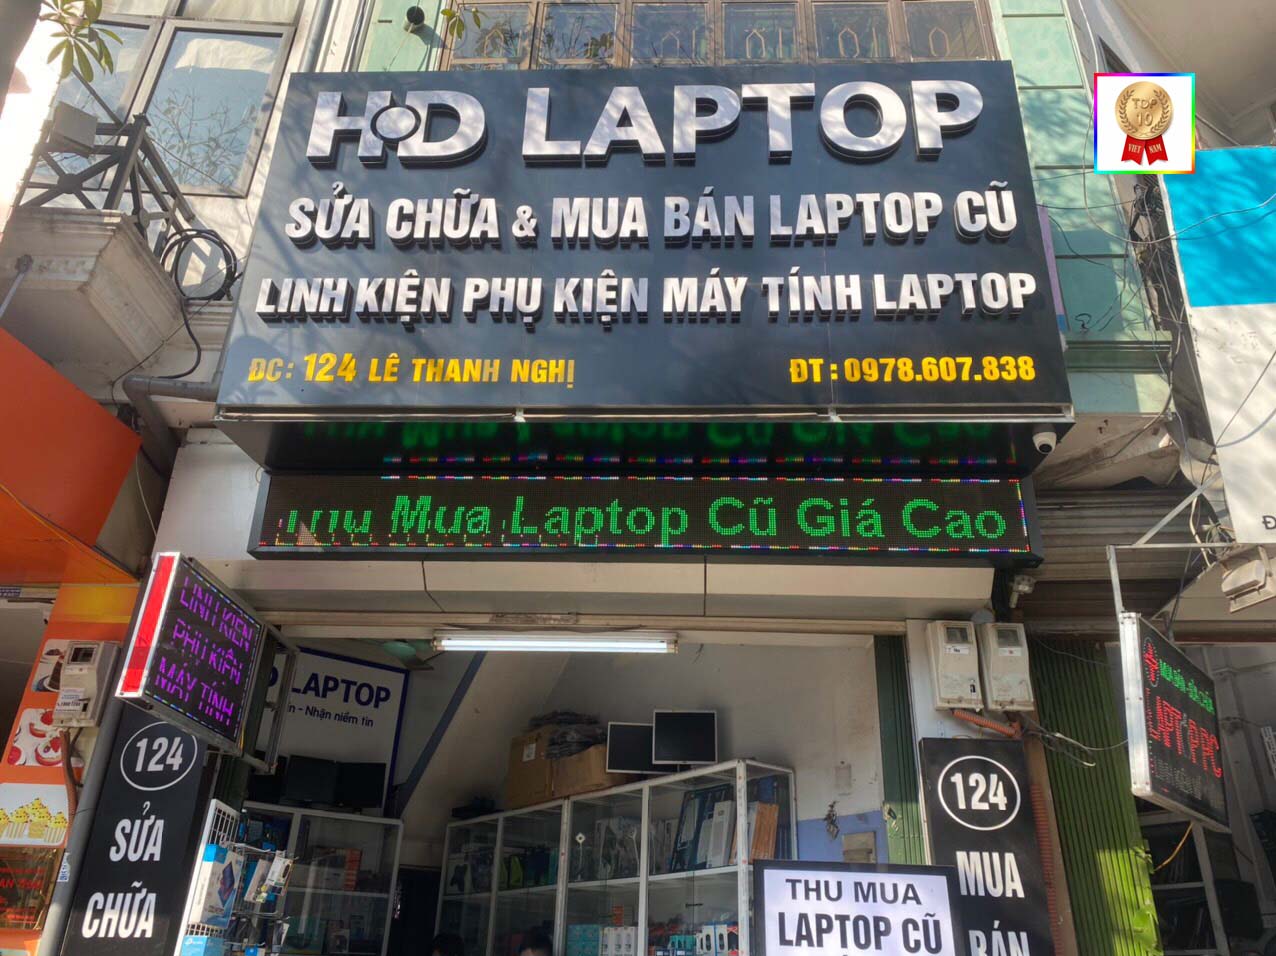 Trung tâm sửa laptop uy tín tại Hà Nội - HD Laptop